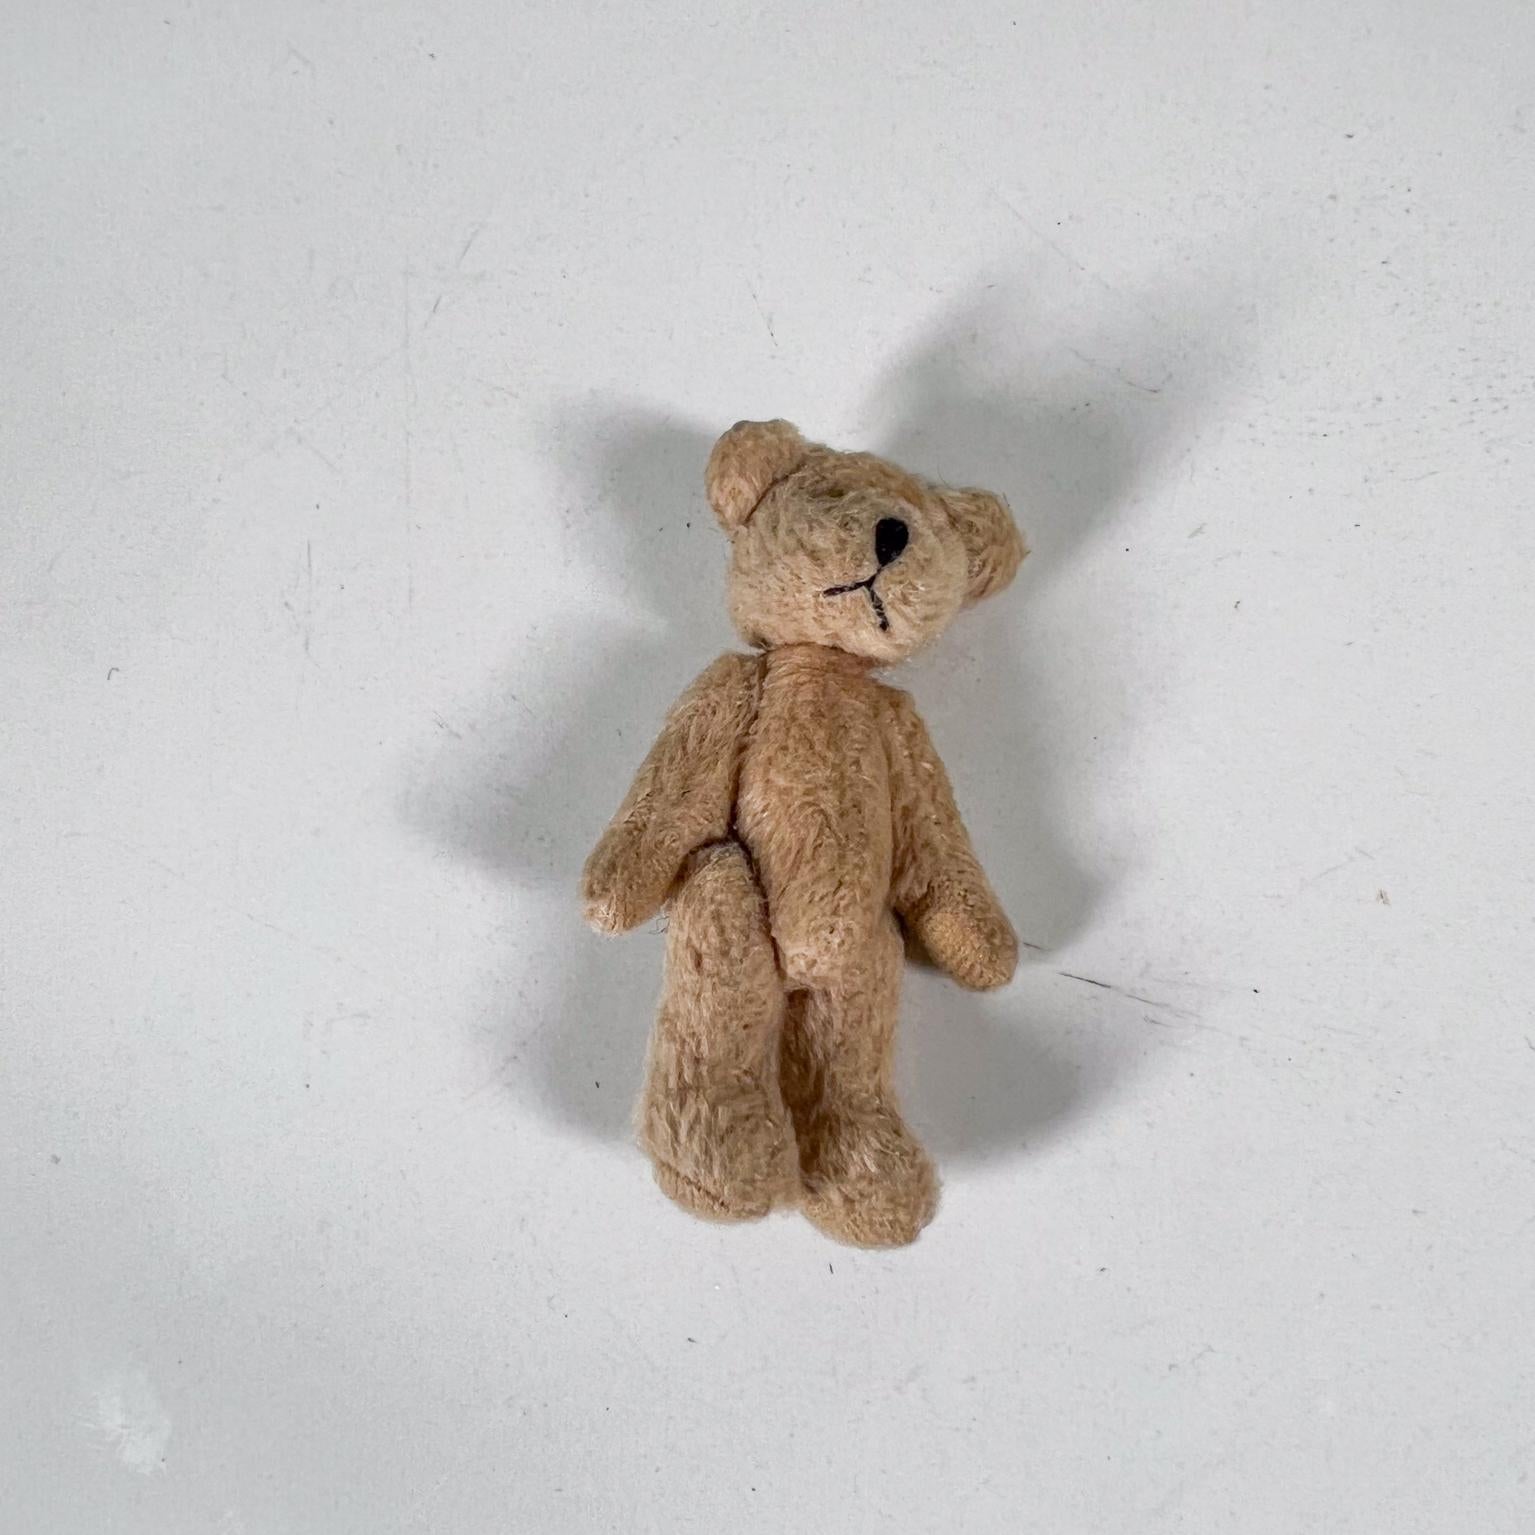 Mid-Century Modern Mid 20th Century Tiny Baby Teddy Bear Soft Huggable Vintage